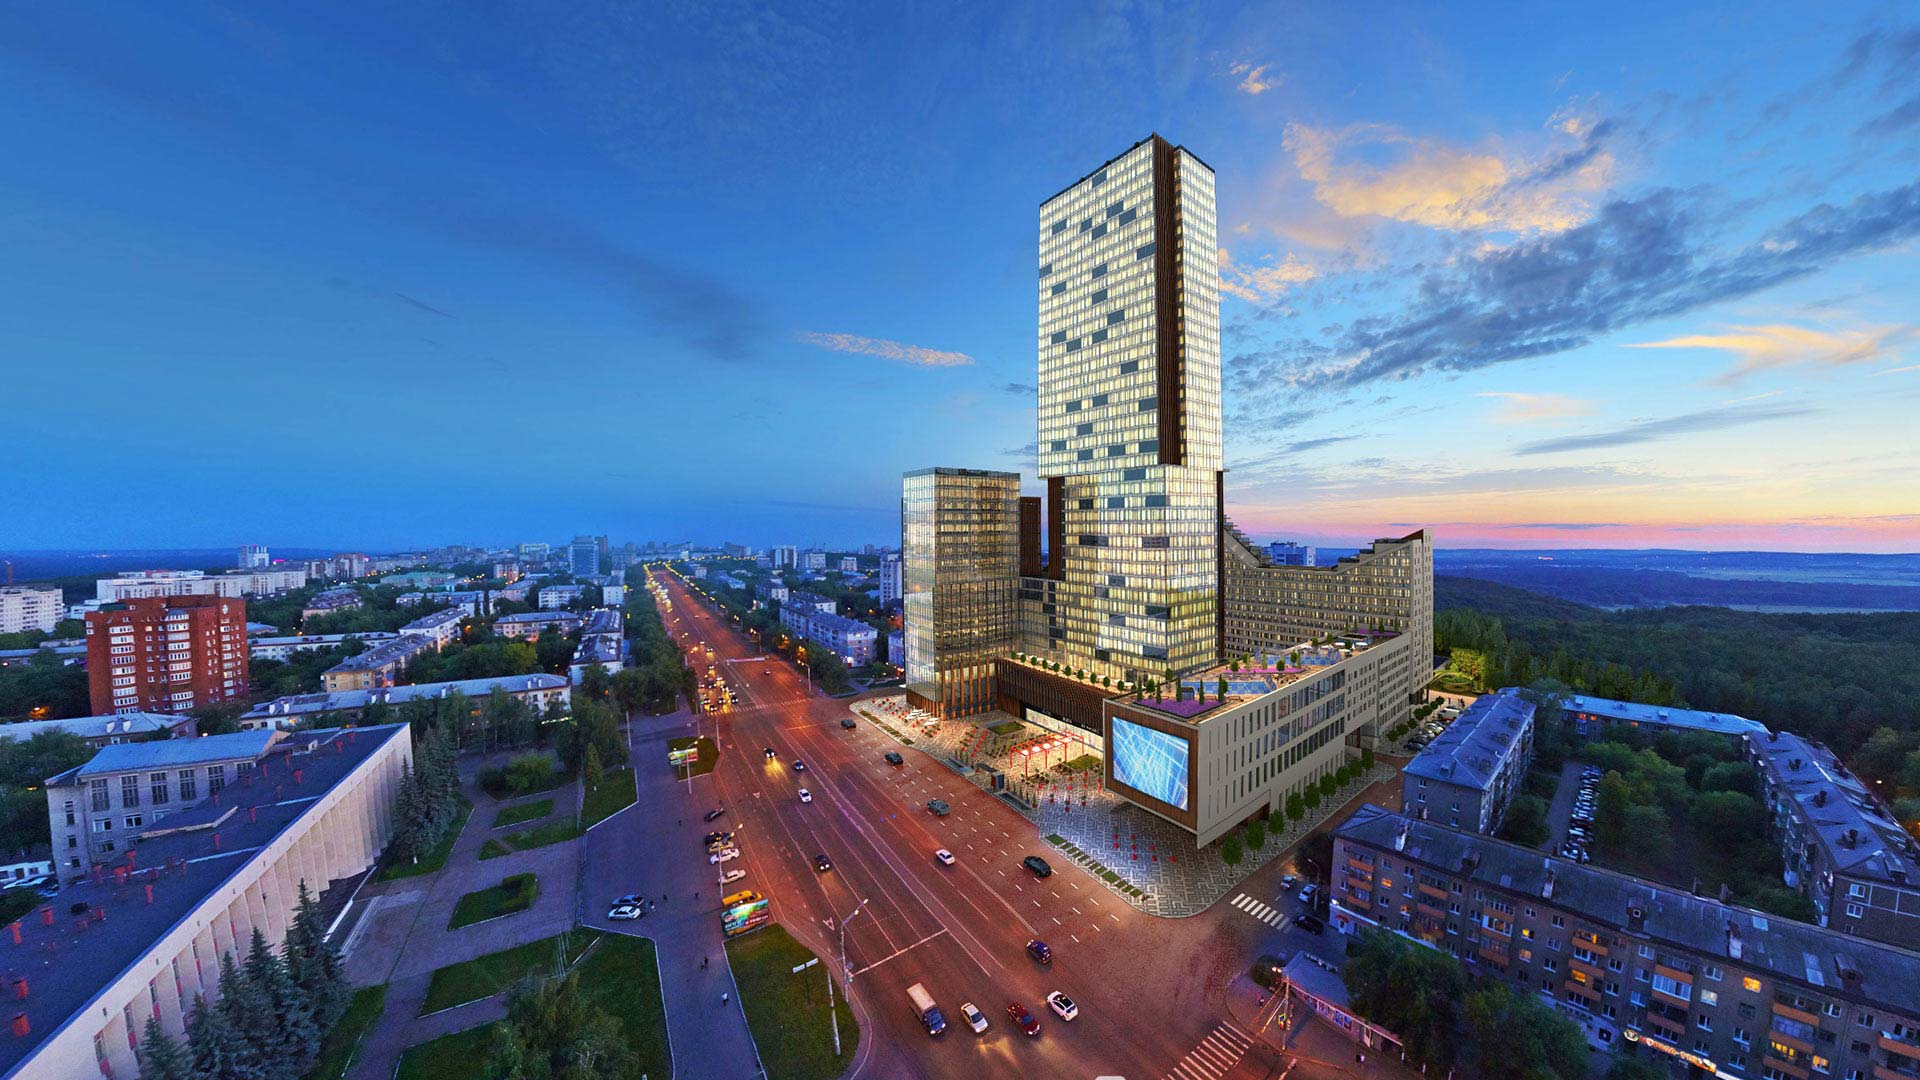 Arvosana parhaista halvoista hotelleista kohteessa Ufa vuodelle 2020